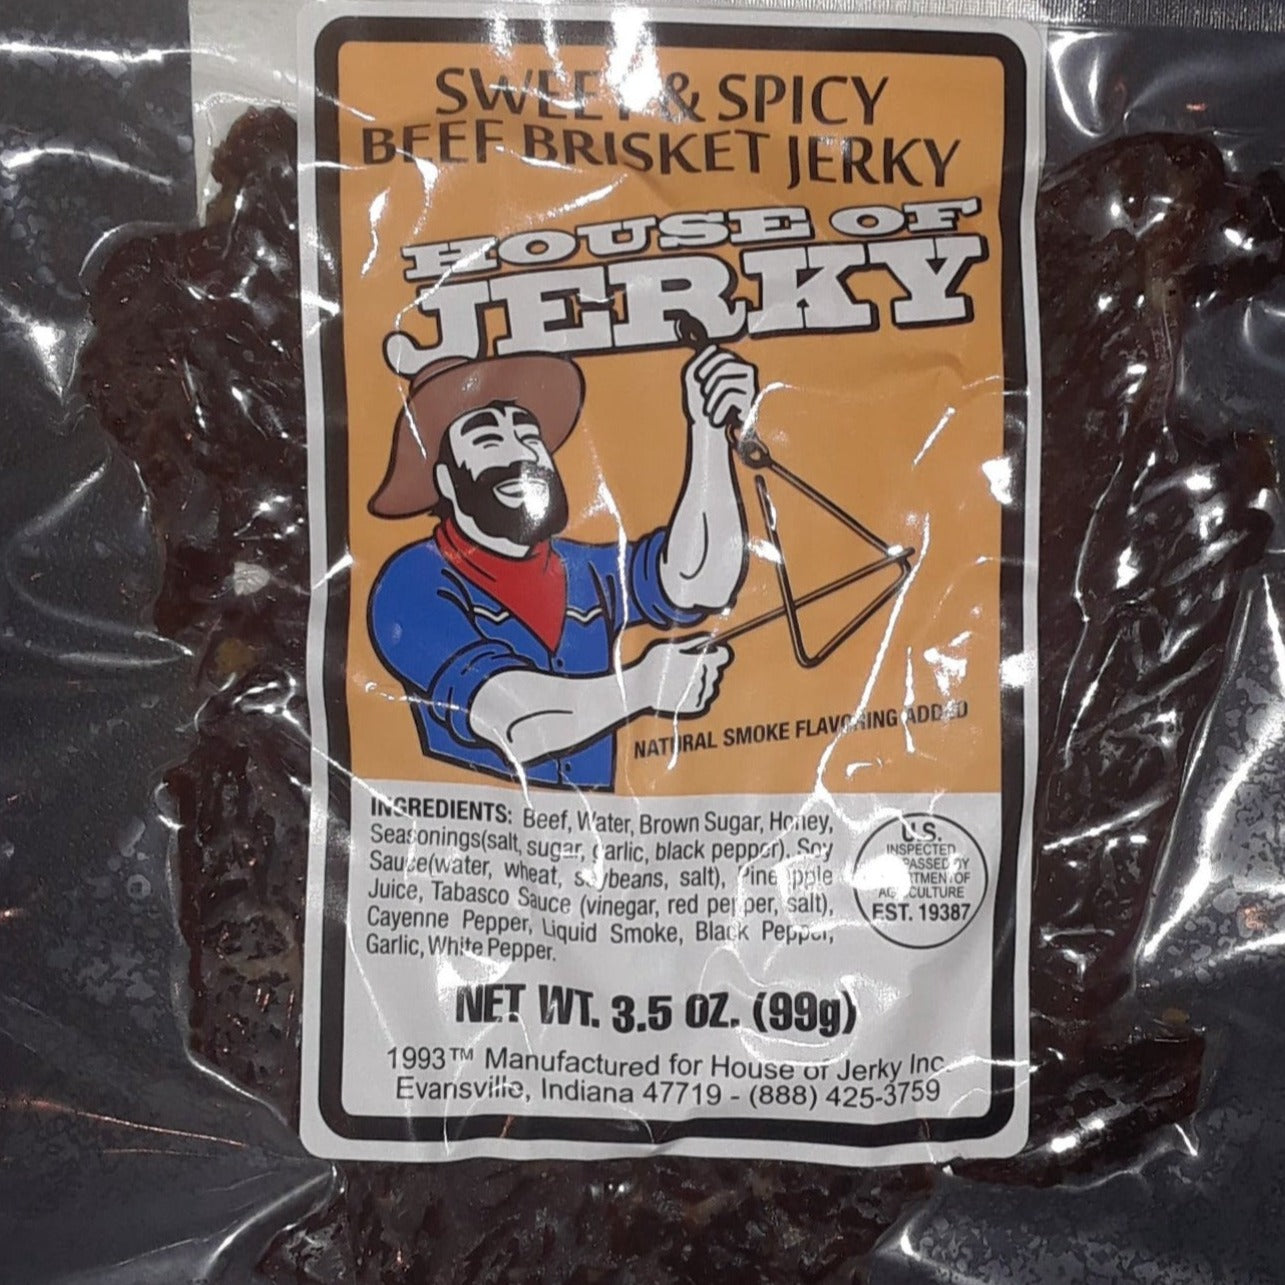 WASHINGTON STATE JERKY - JERKY - BEEF JERKY - BRISKET CUT JERKY